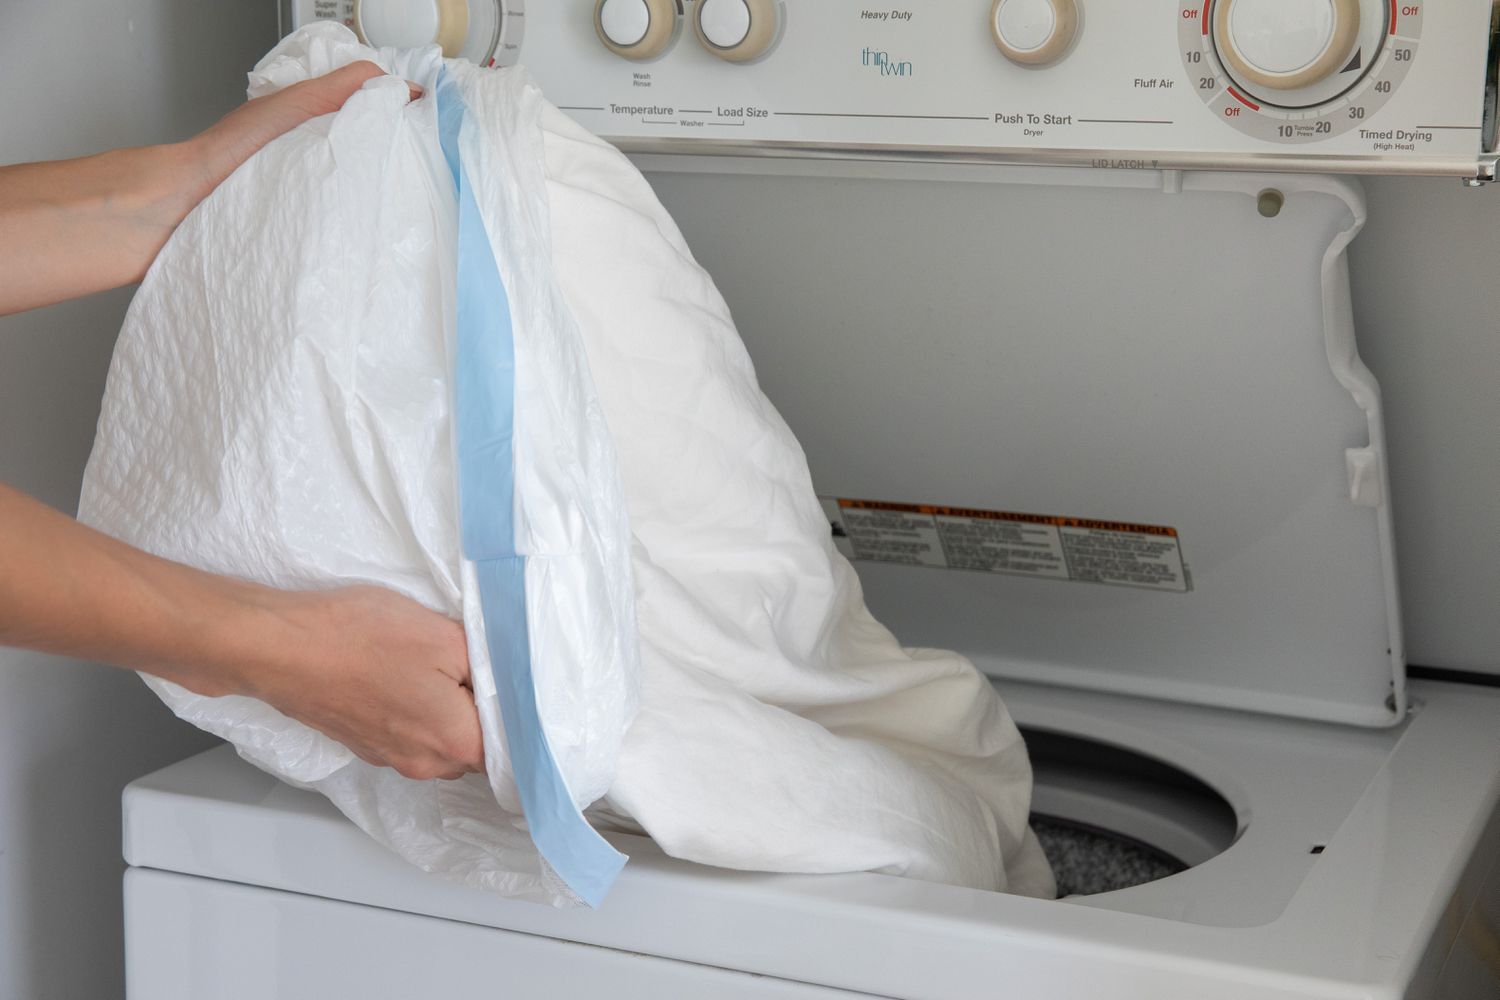 Roupas infestadas de percevejos em saco plástico de lixo derramado na máquina de lavar